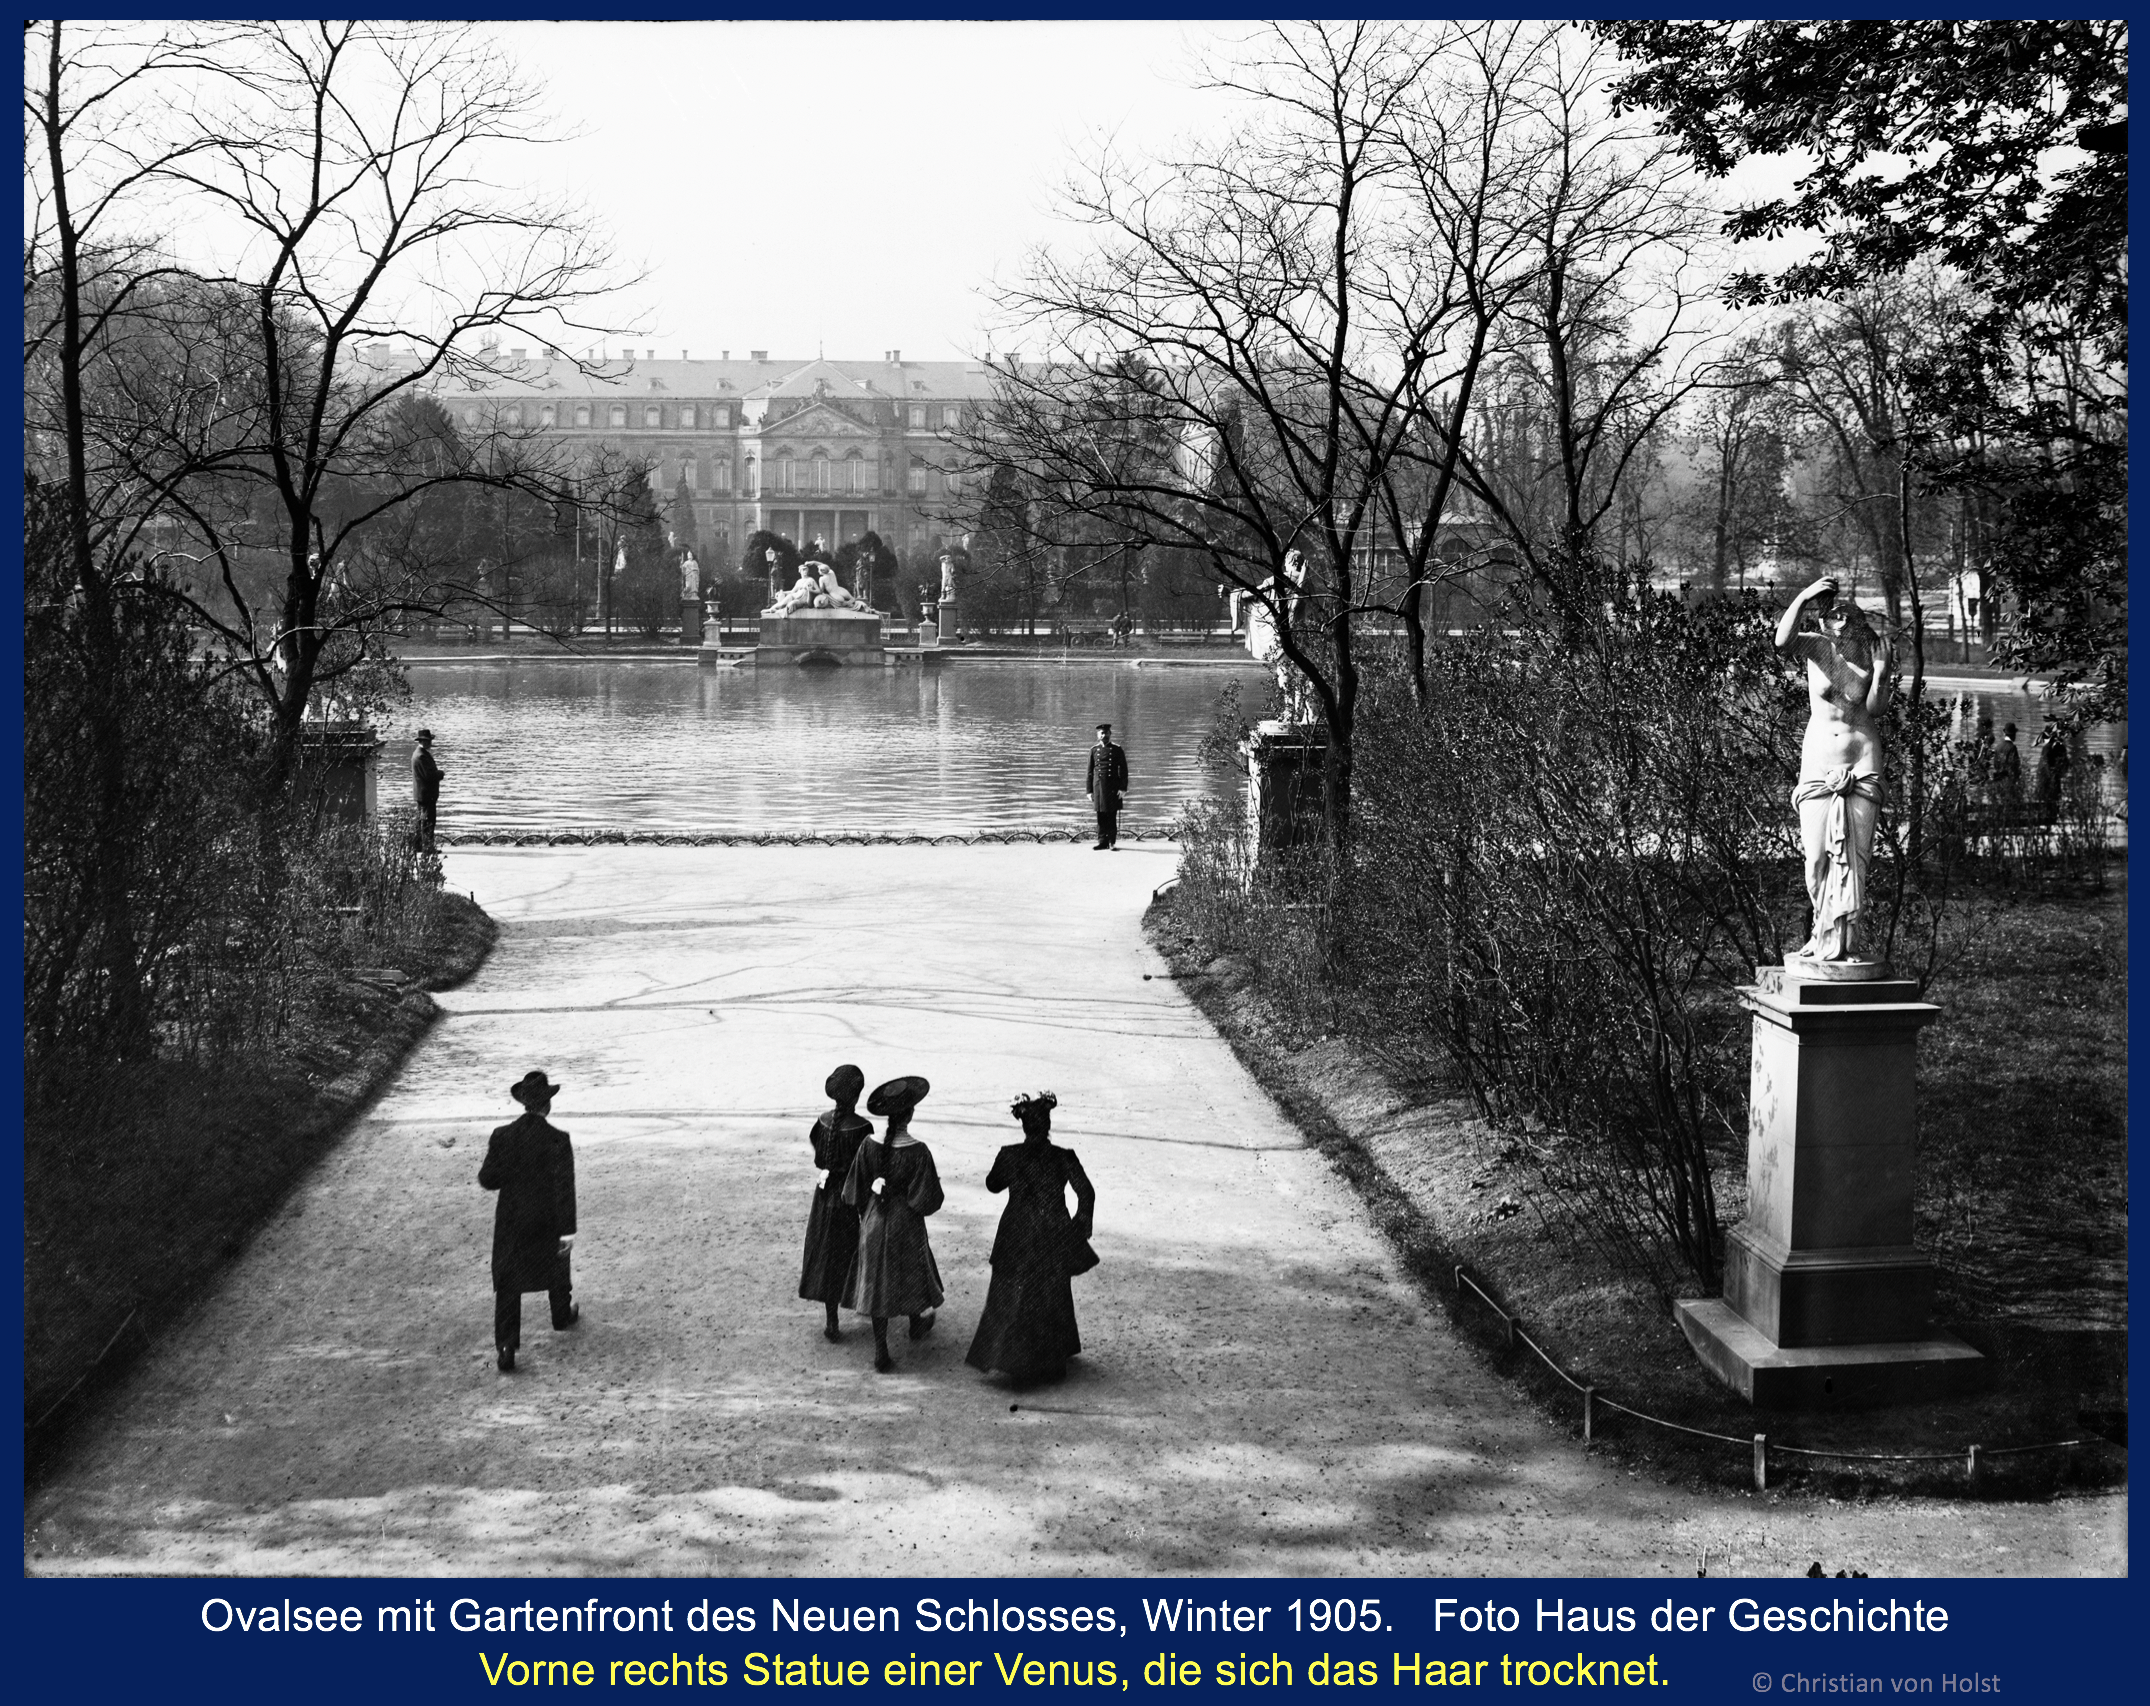 Verlorene Werke – Schönheiten im Schlossgarten – Venus Anadyomene Schlossgarten Stuttgart 1905